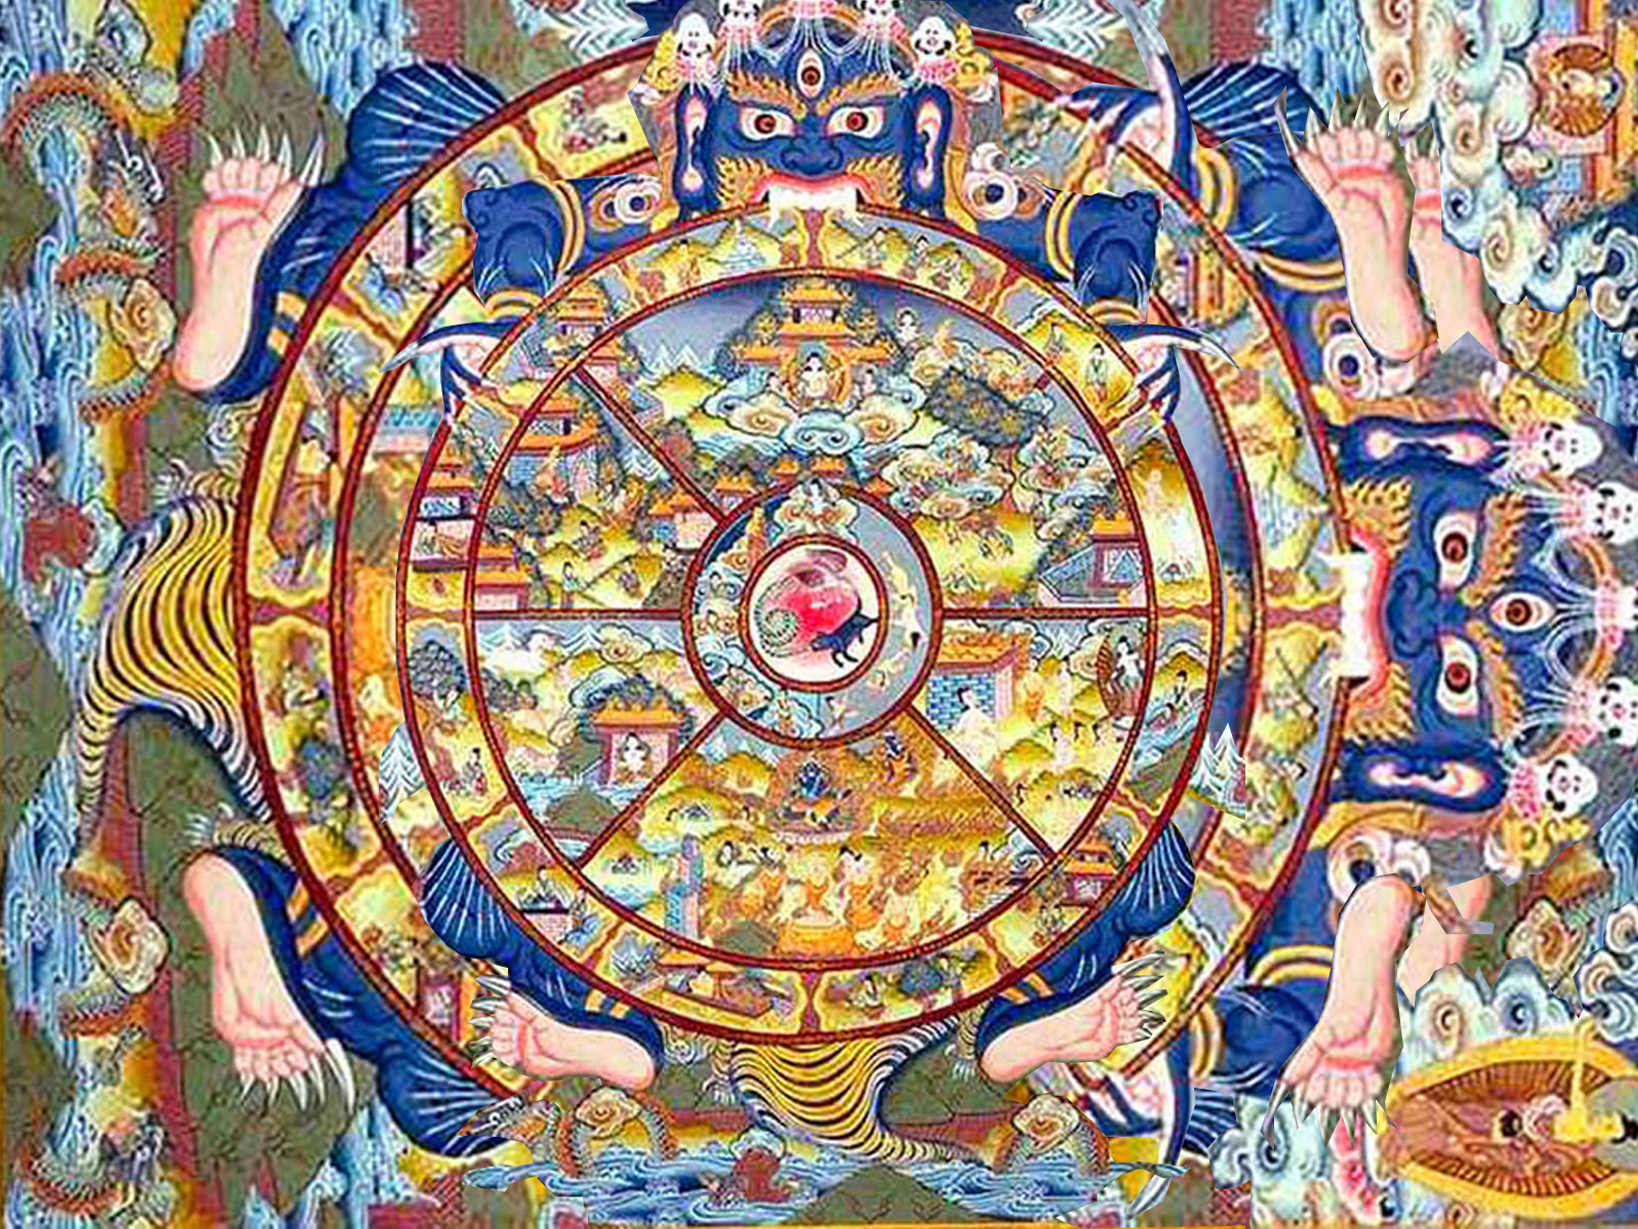 Illustration de la samsara (cycle de la vie et des réincarnations)